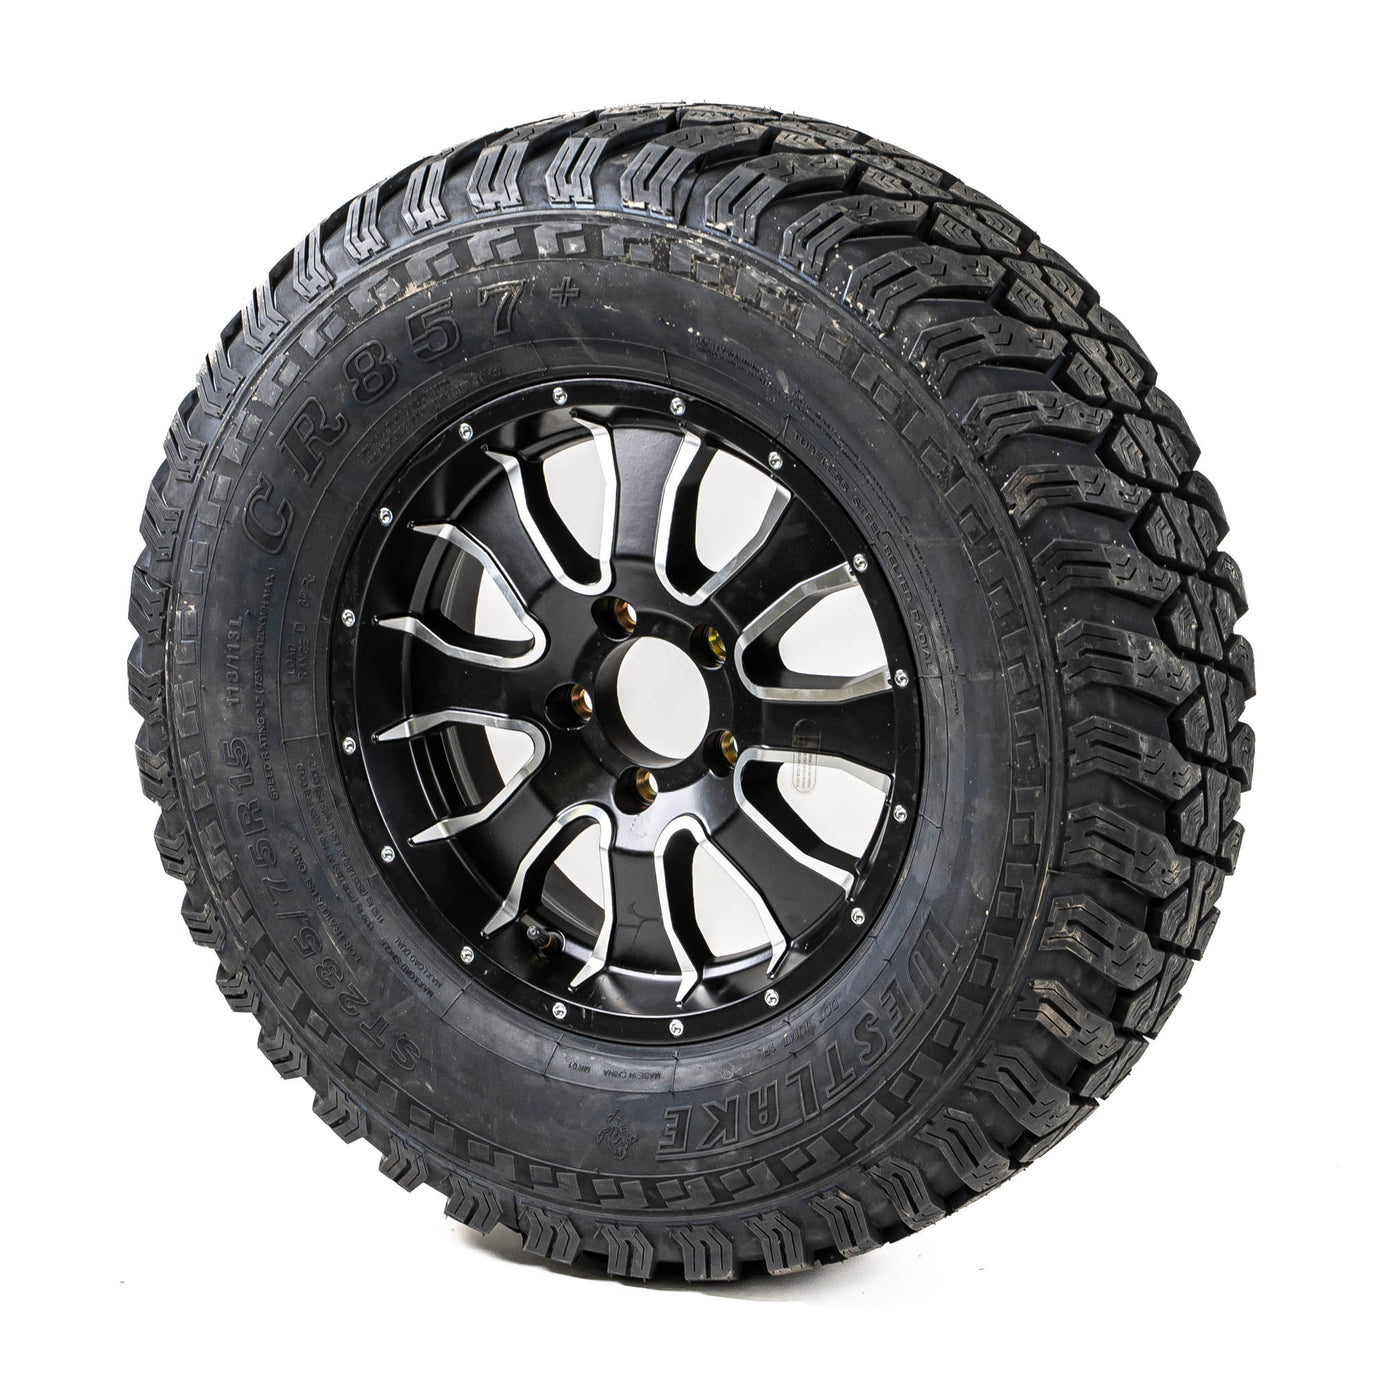 15″ Aluminum Rim and Off-Road Tire